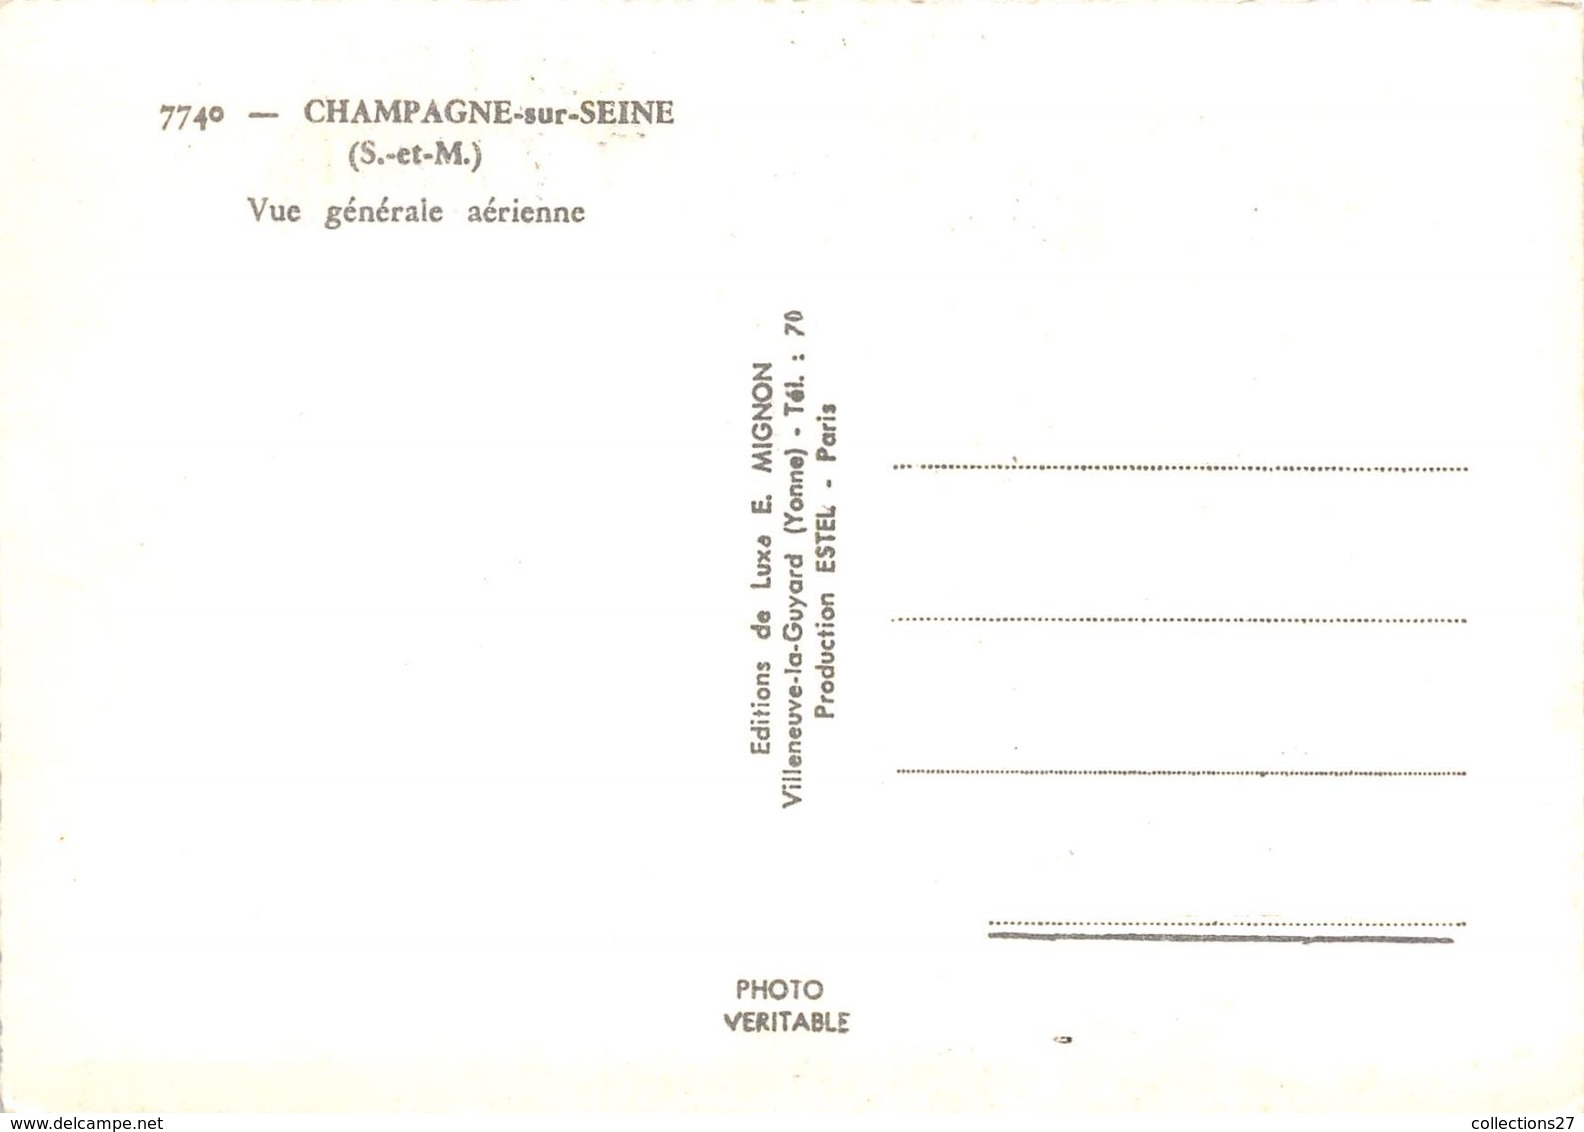 77-CHAMPAGNE-SUR-SEINE- VUE GENERALE AERIENNE - Champagne Sur Seine